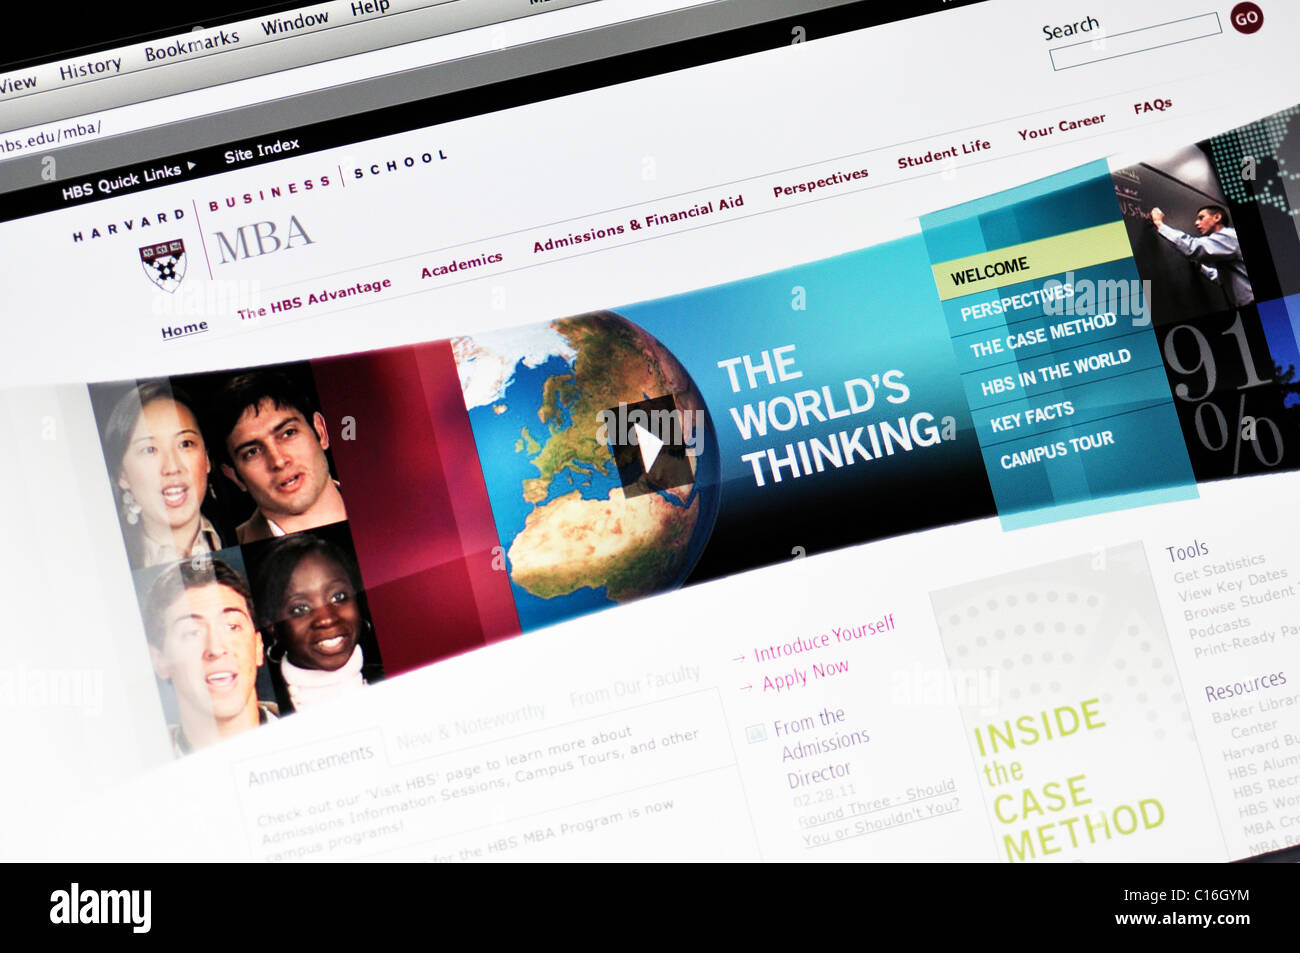 Harvard University website - Business School Stock Photo